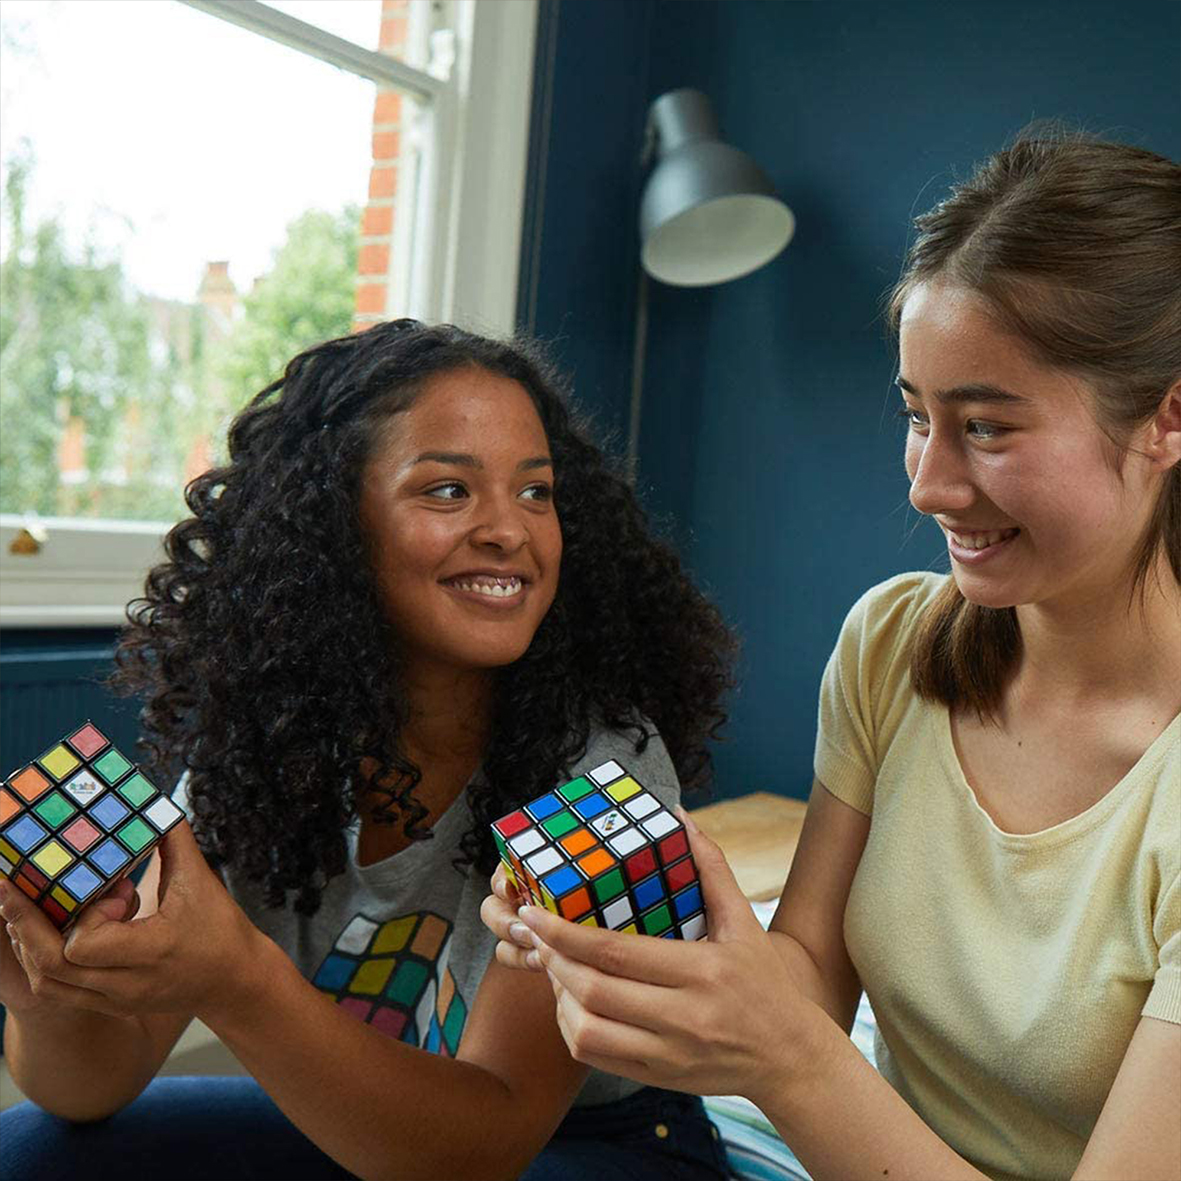 Rubik's speed cube 3x3 Rubik : King Jouet, Jeux de réflexion Rubik - Jeux  de société